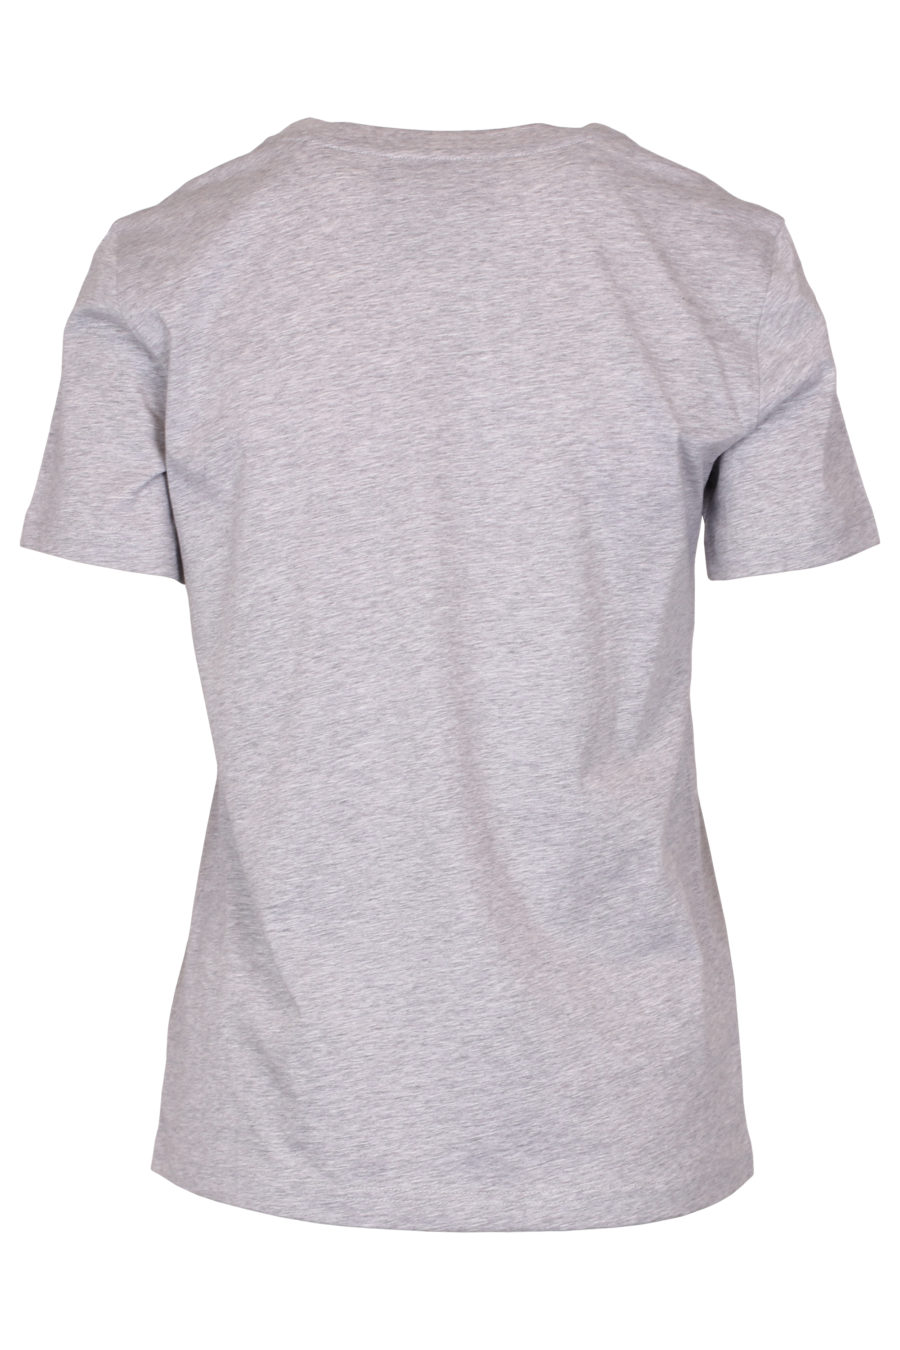 Camiseta gris con logo negro - IMG 9343